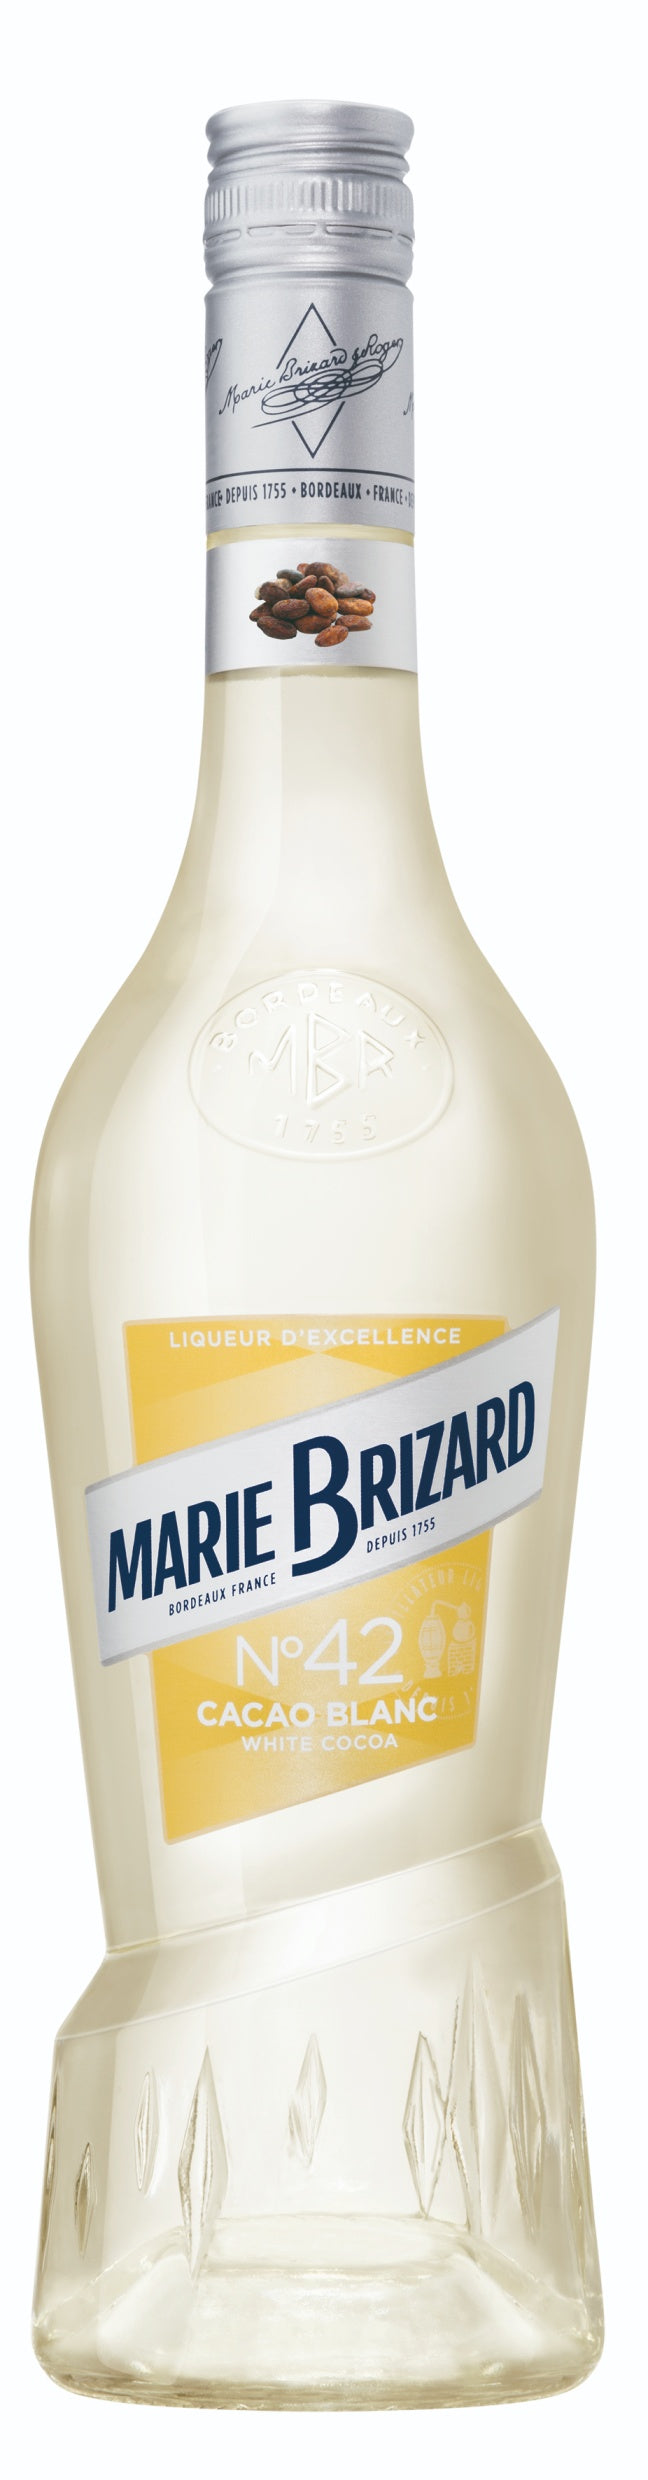 MARIE BRIZARD LIQUEUR CREME DE CACAO BLANC 70CL